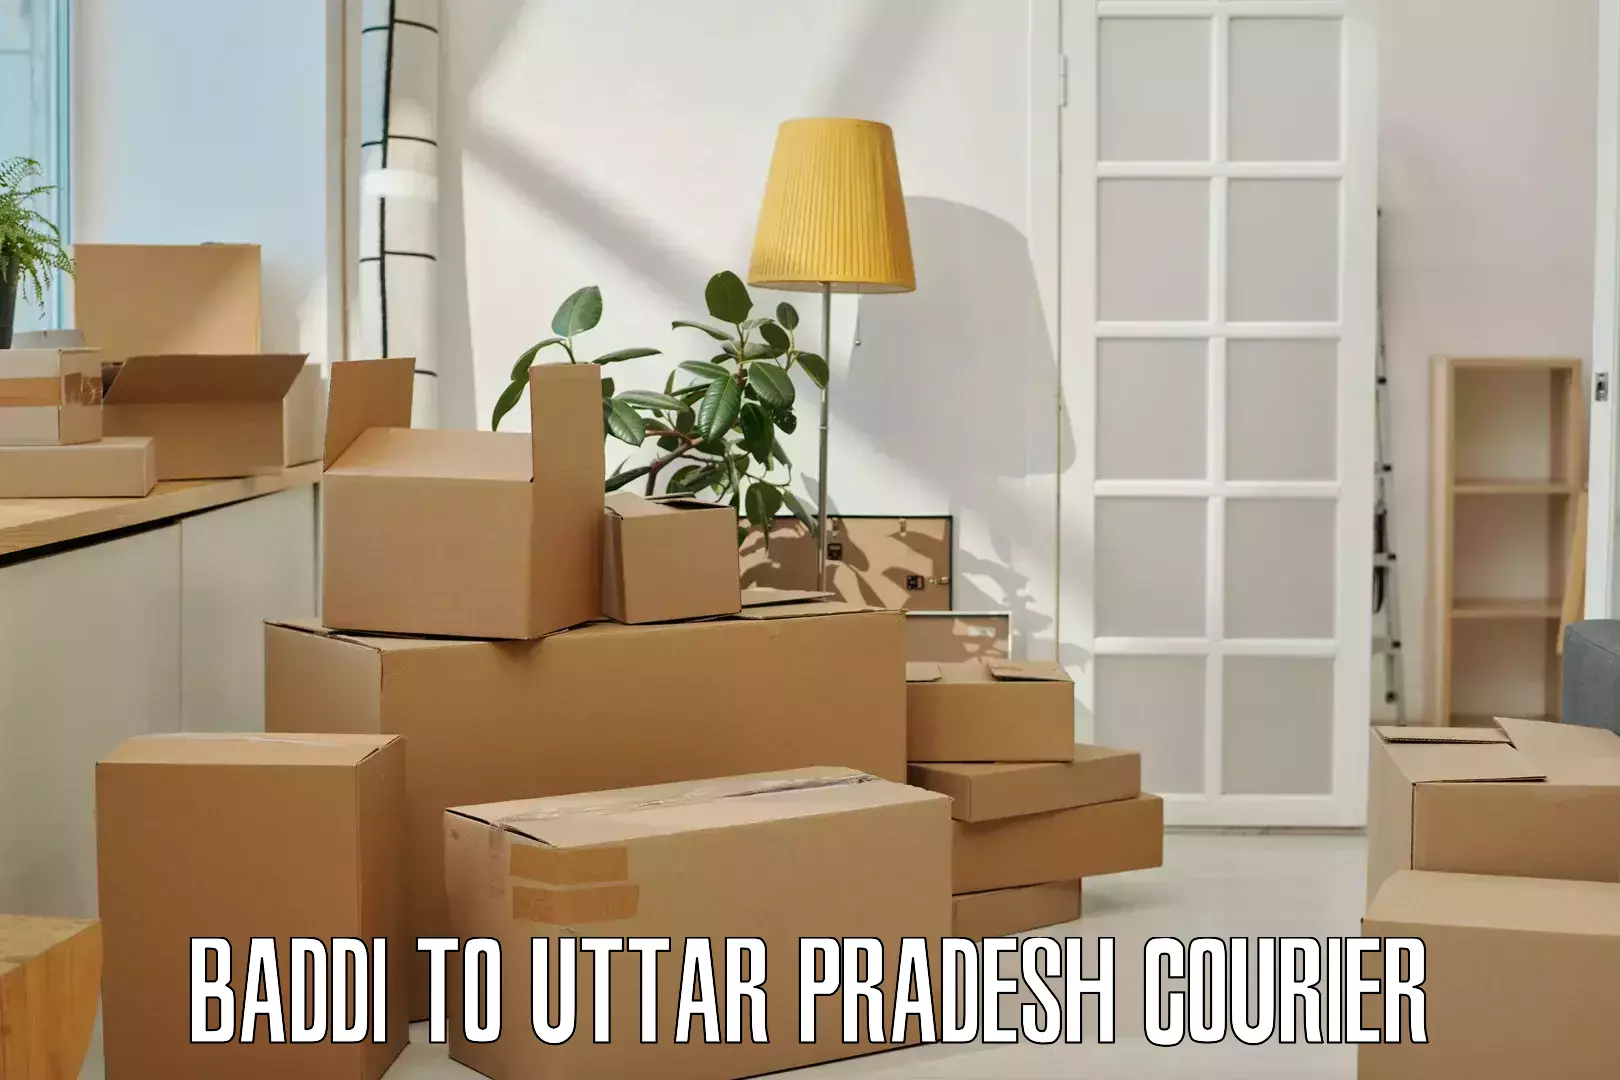 Shipping and handling Baddi to Pahasu